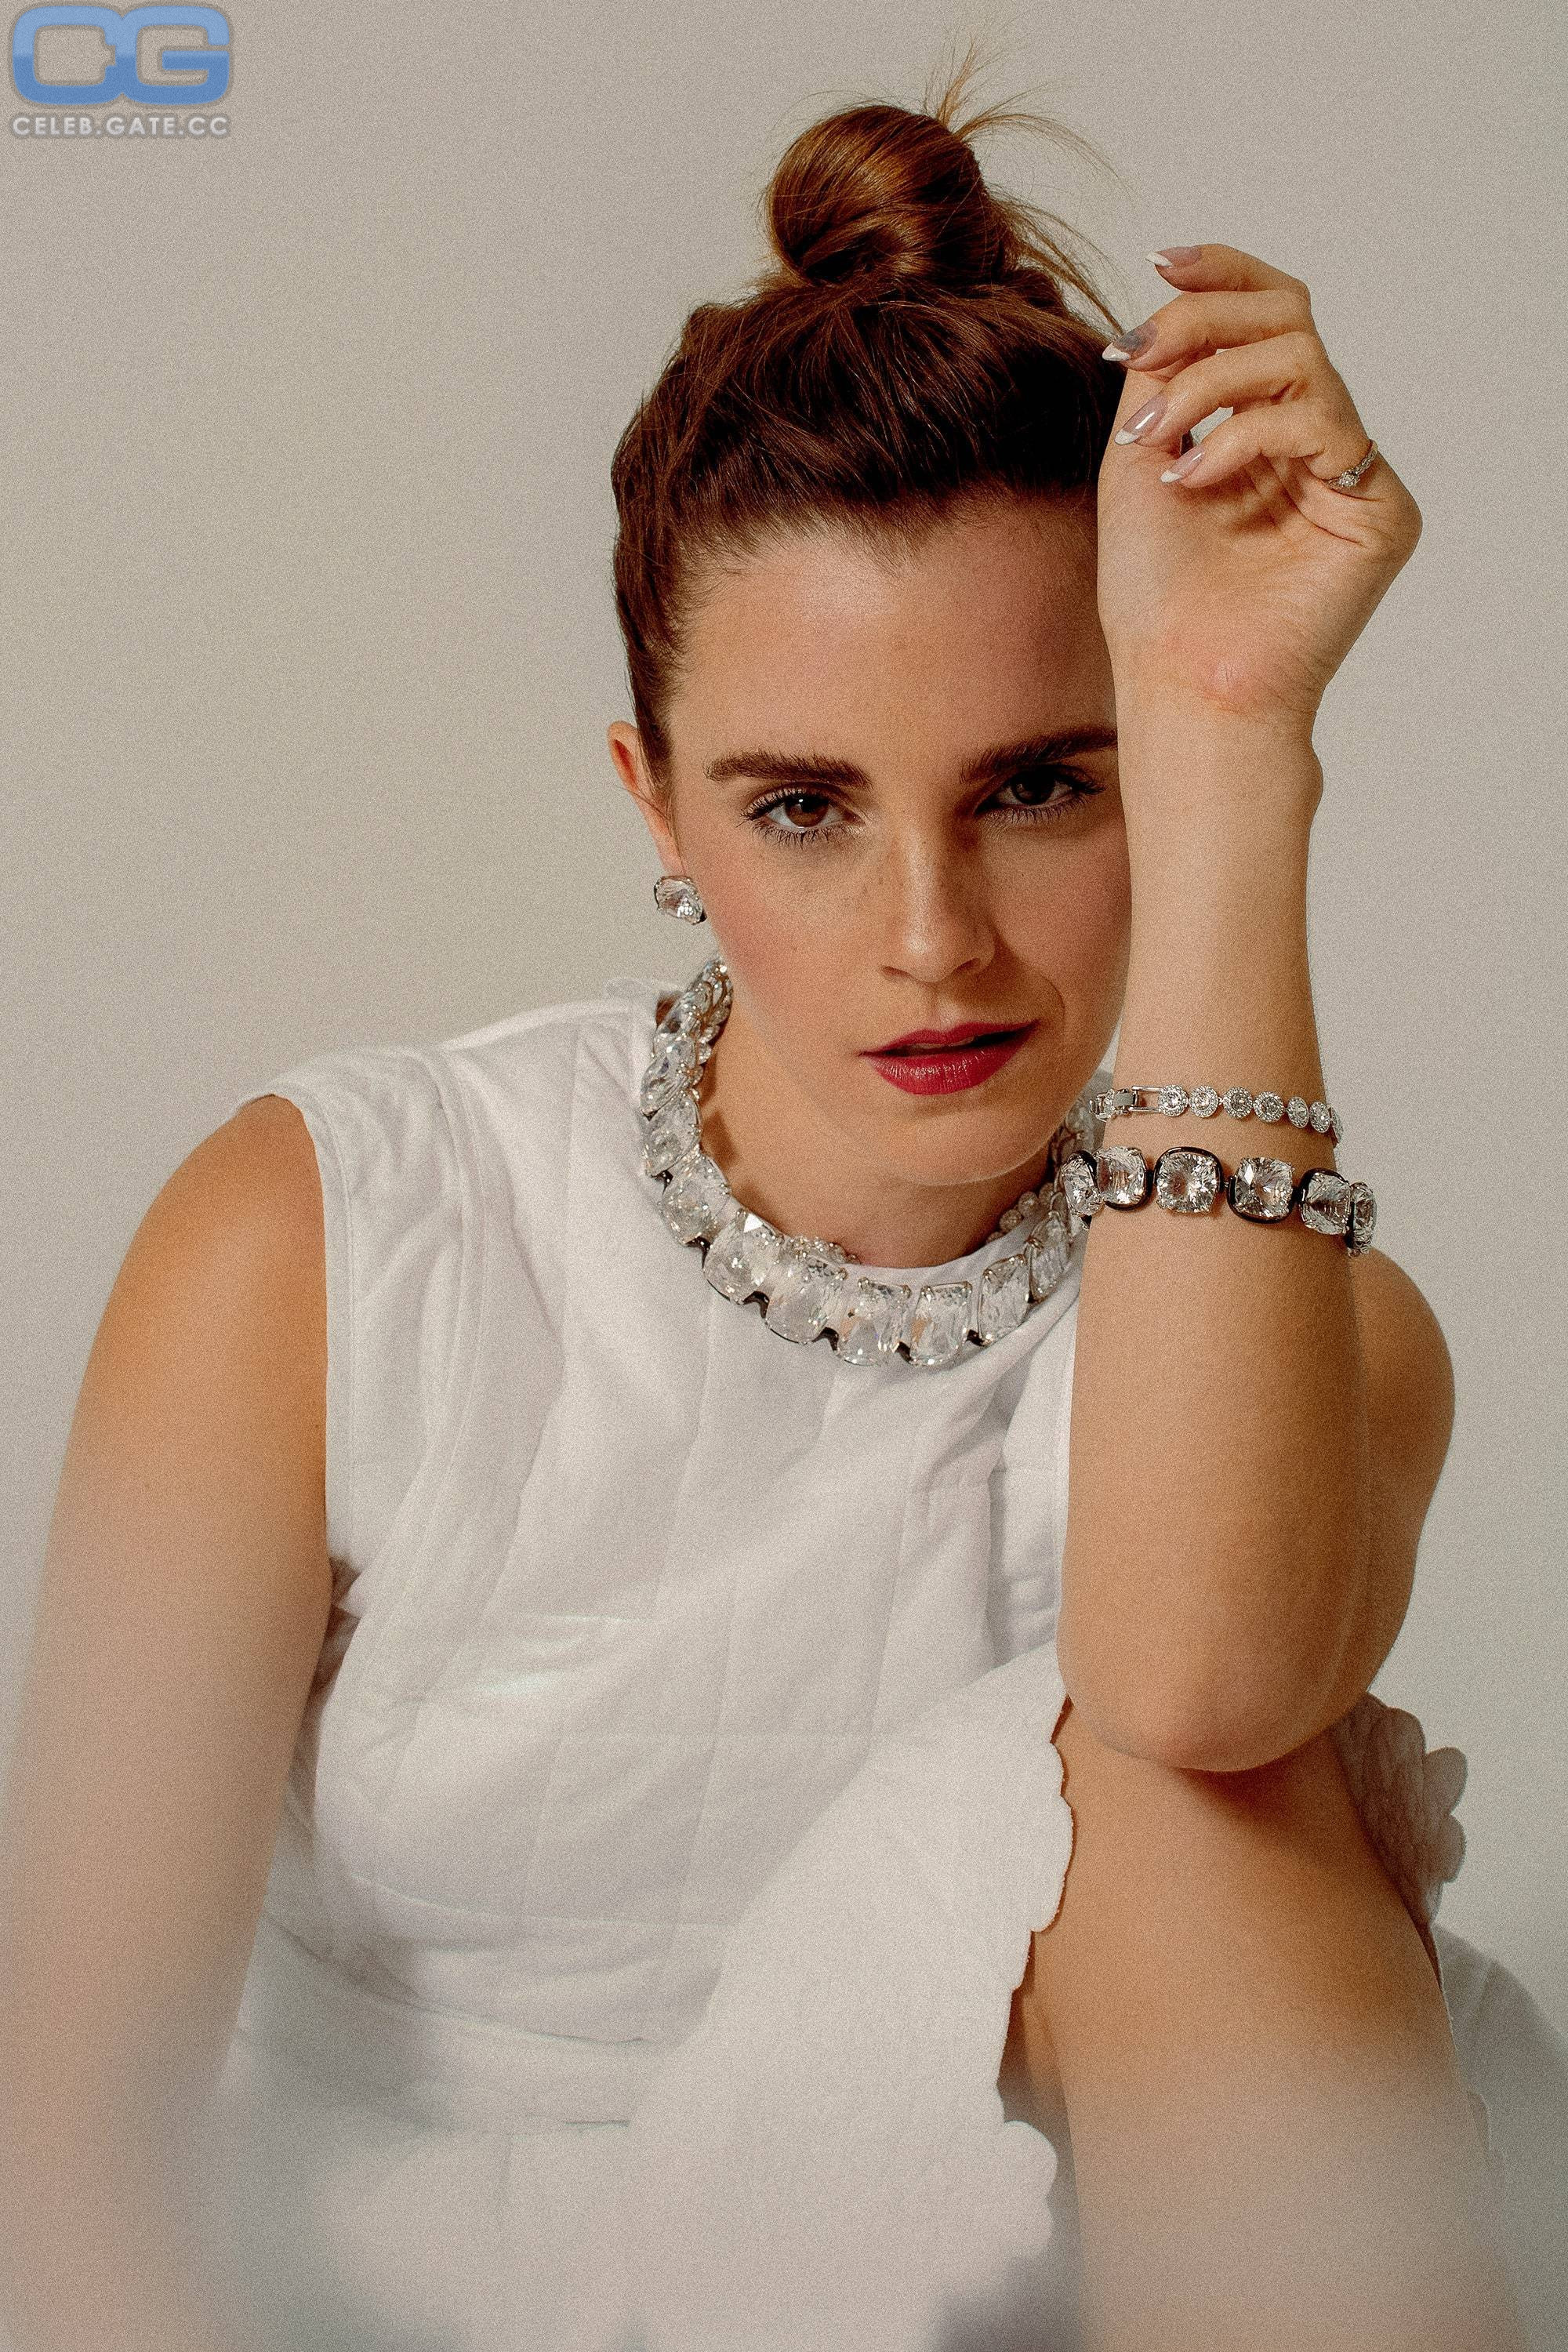 Emma Watson 